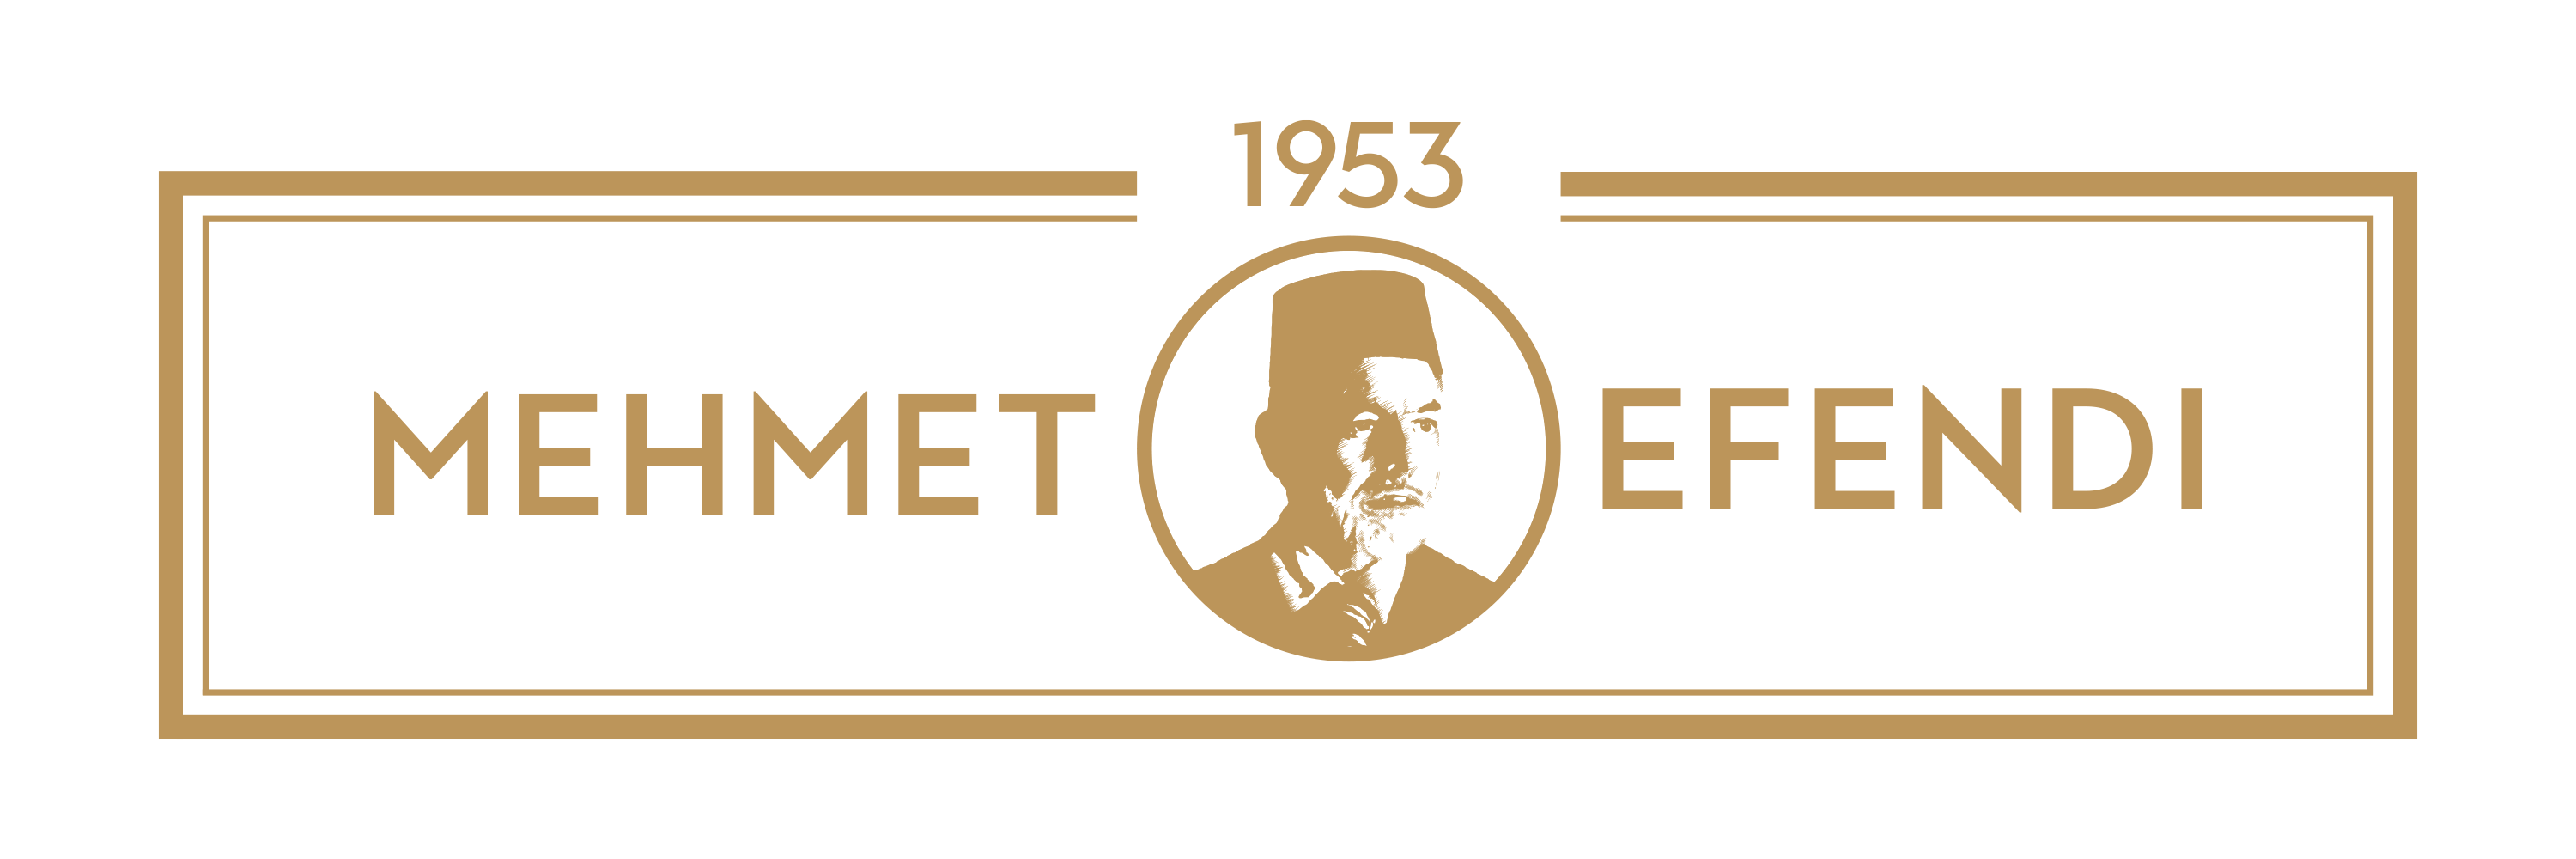 Mehmet Efendi 1953 Logo